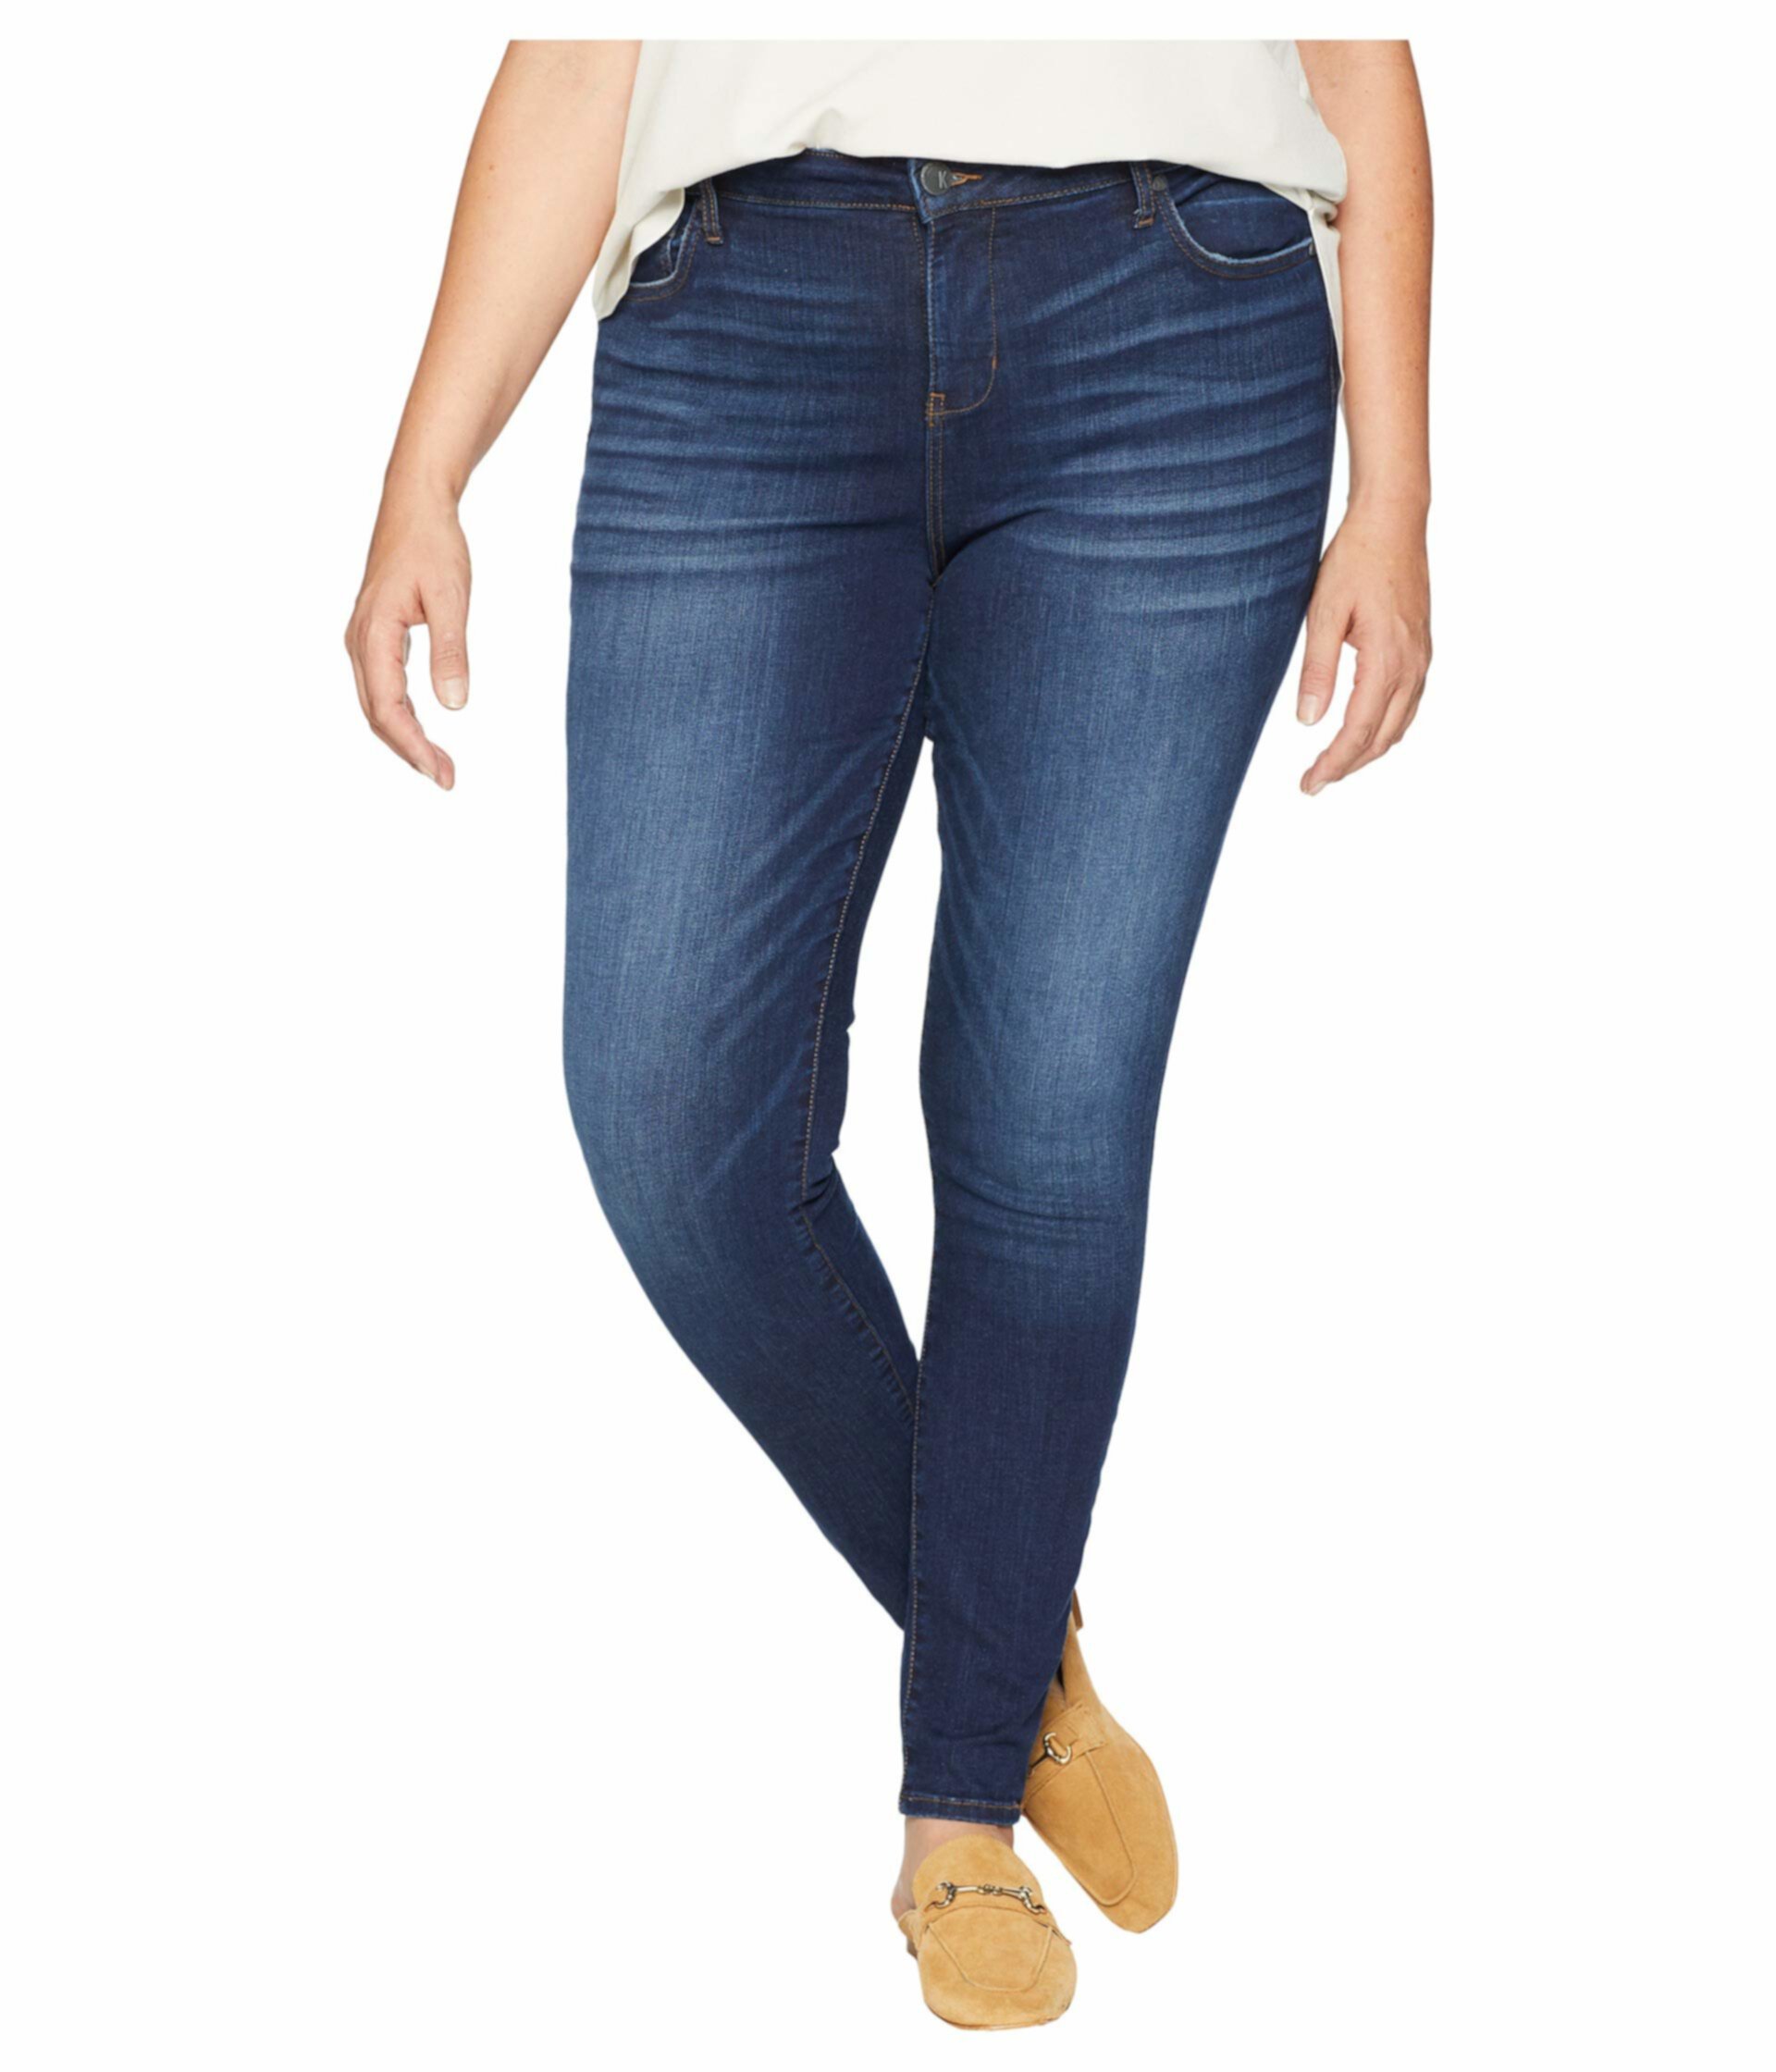 Узкие джинсы Mia с высокой талией большого размера KUT from the Kloth